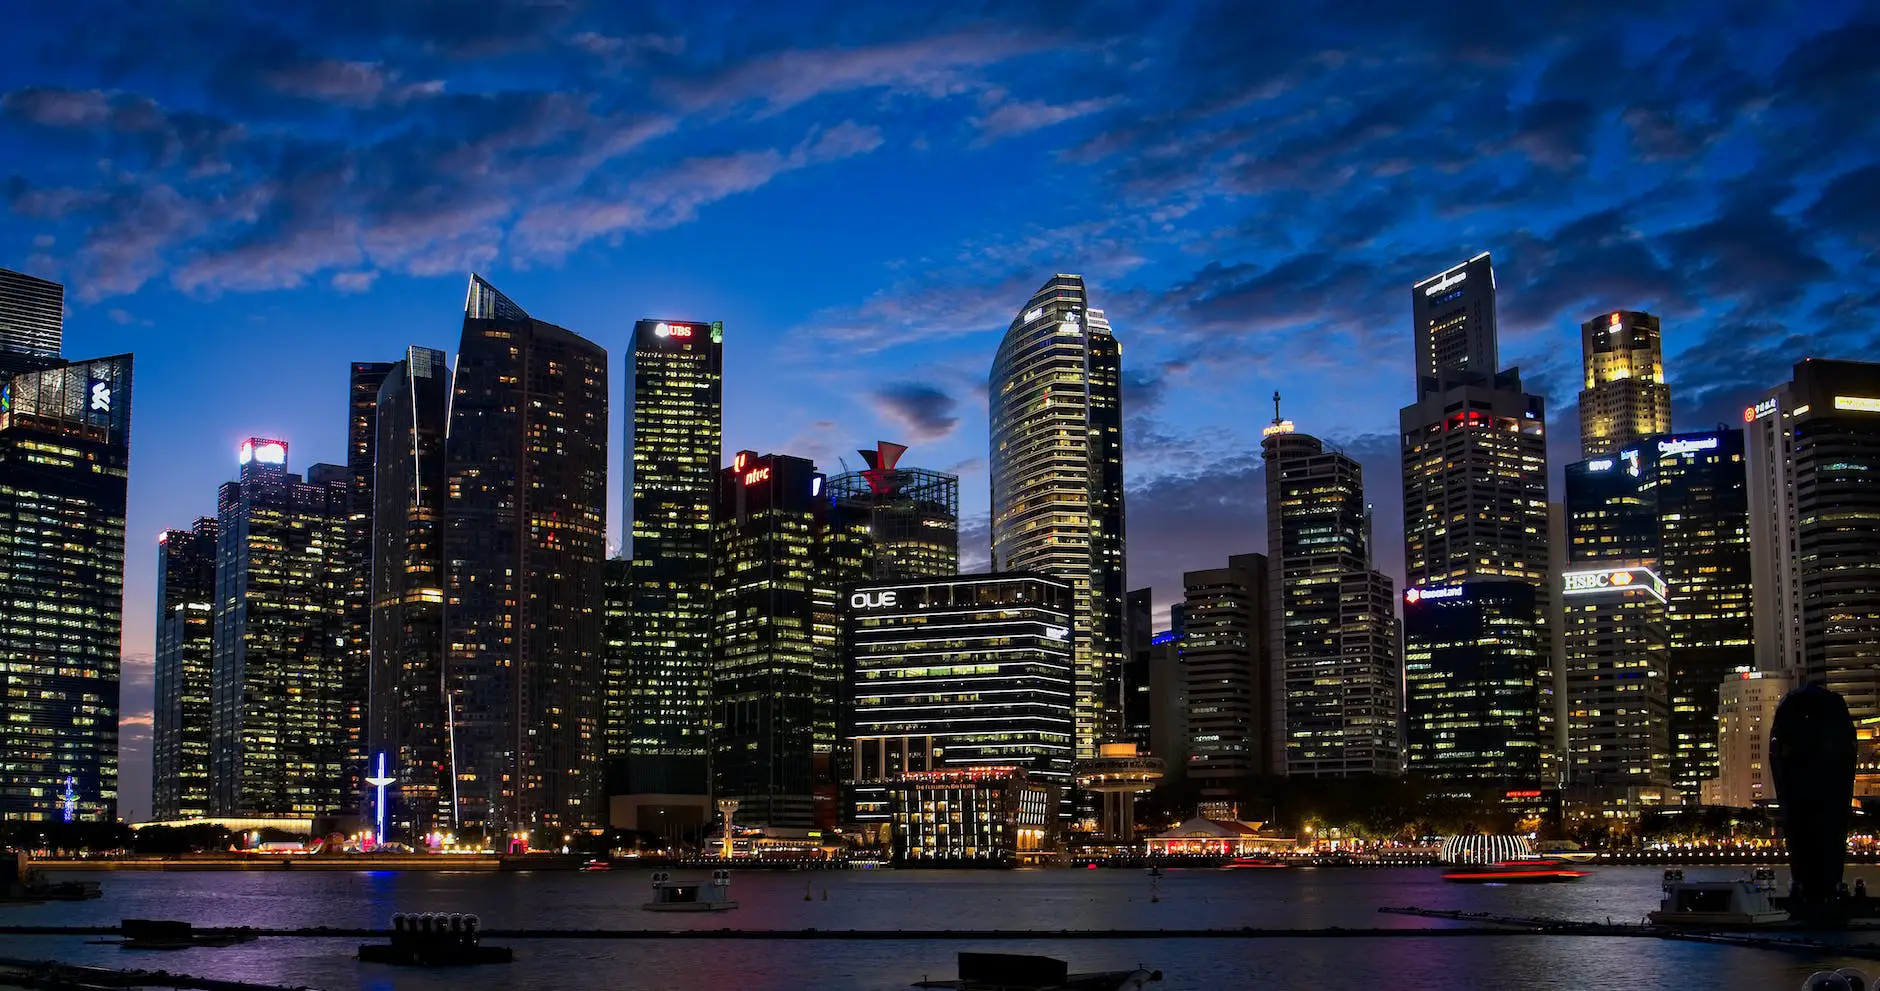 Singapore Fixed Deposit Rates